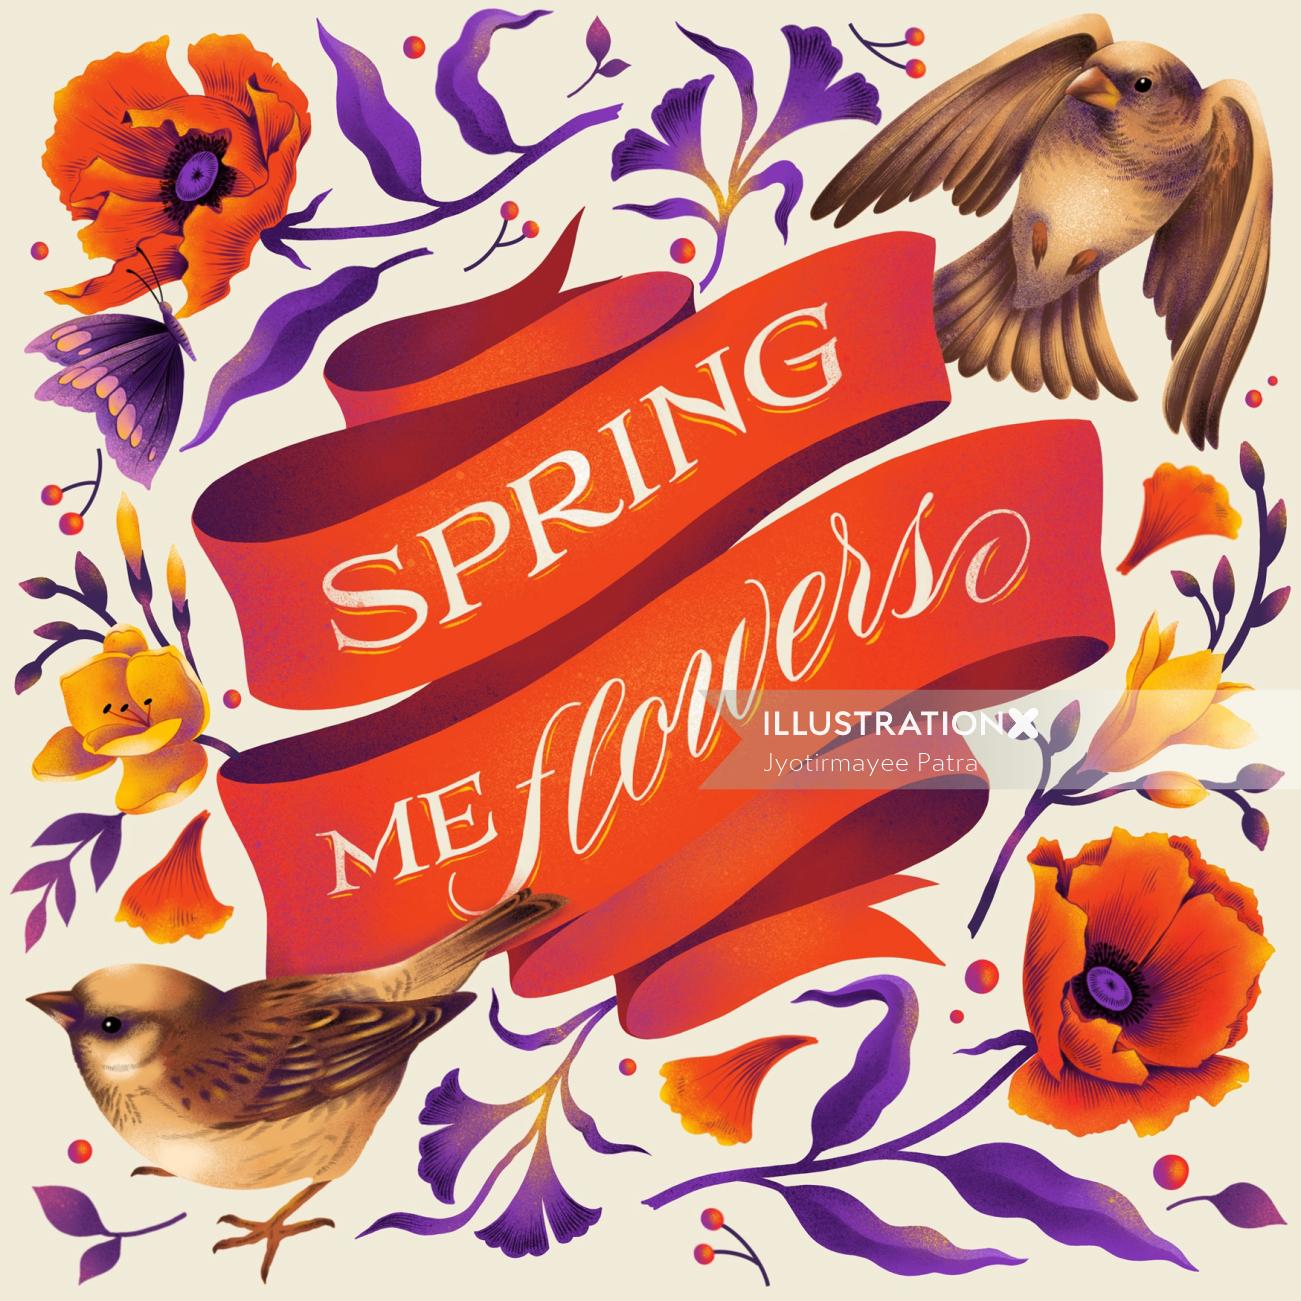 Obras de arte inspiradas na temporada de Spring title Spring me flowers